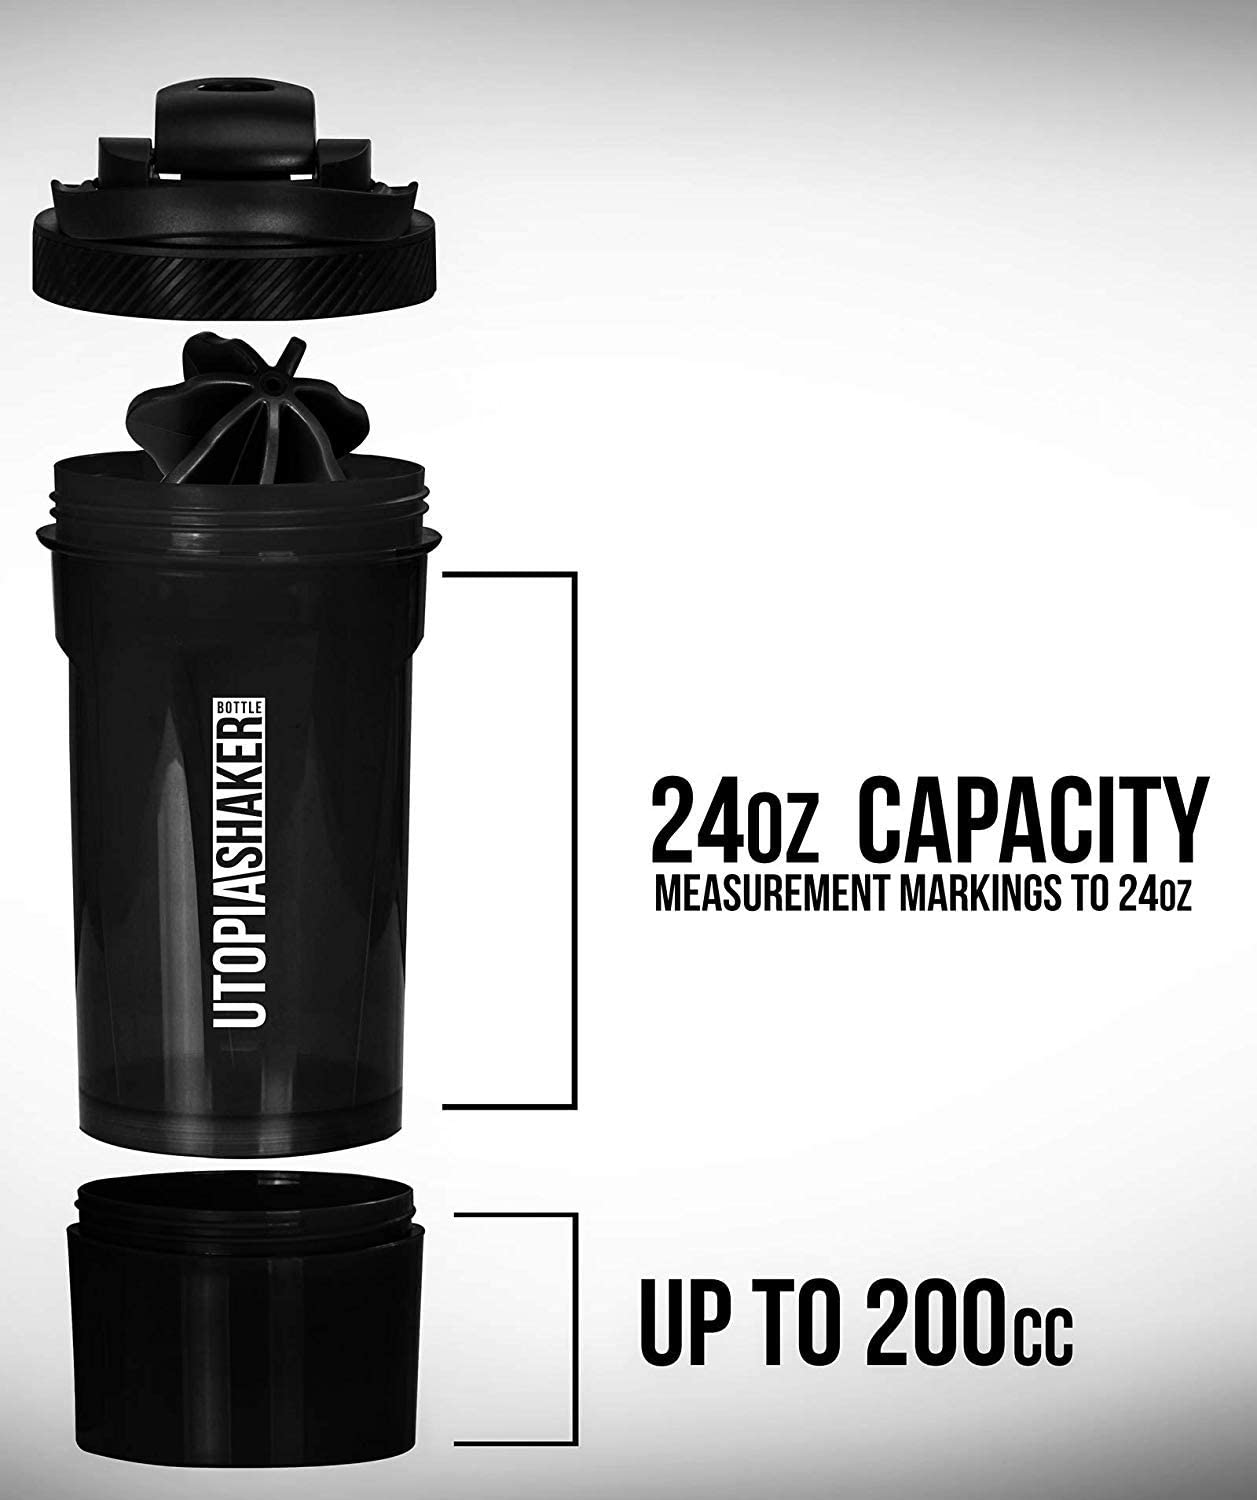 Utopia Home 2-Pack Shaker Bottle - 24 Ounce Protein Shaker Bottle